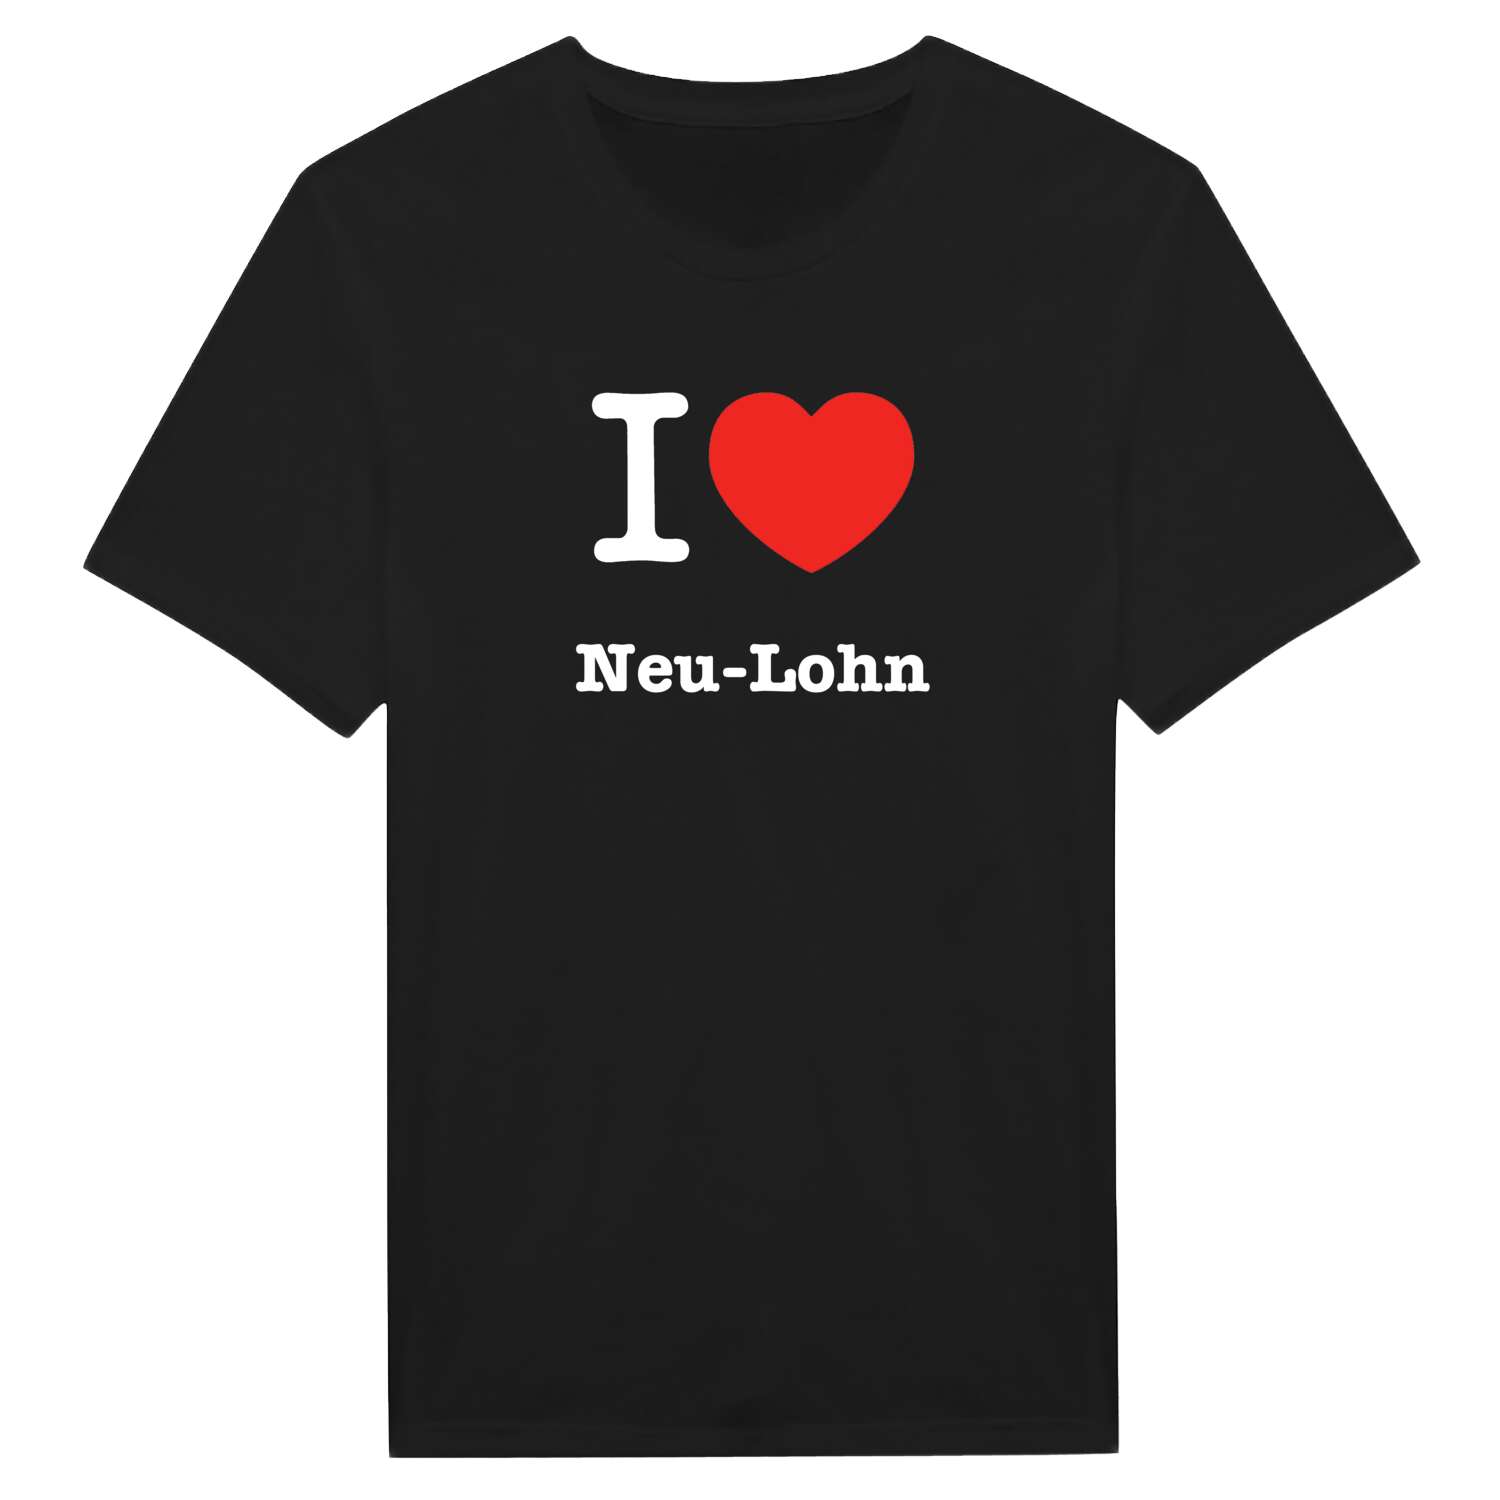 Neu-Lohn T-Shirt »I love«